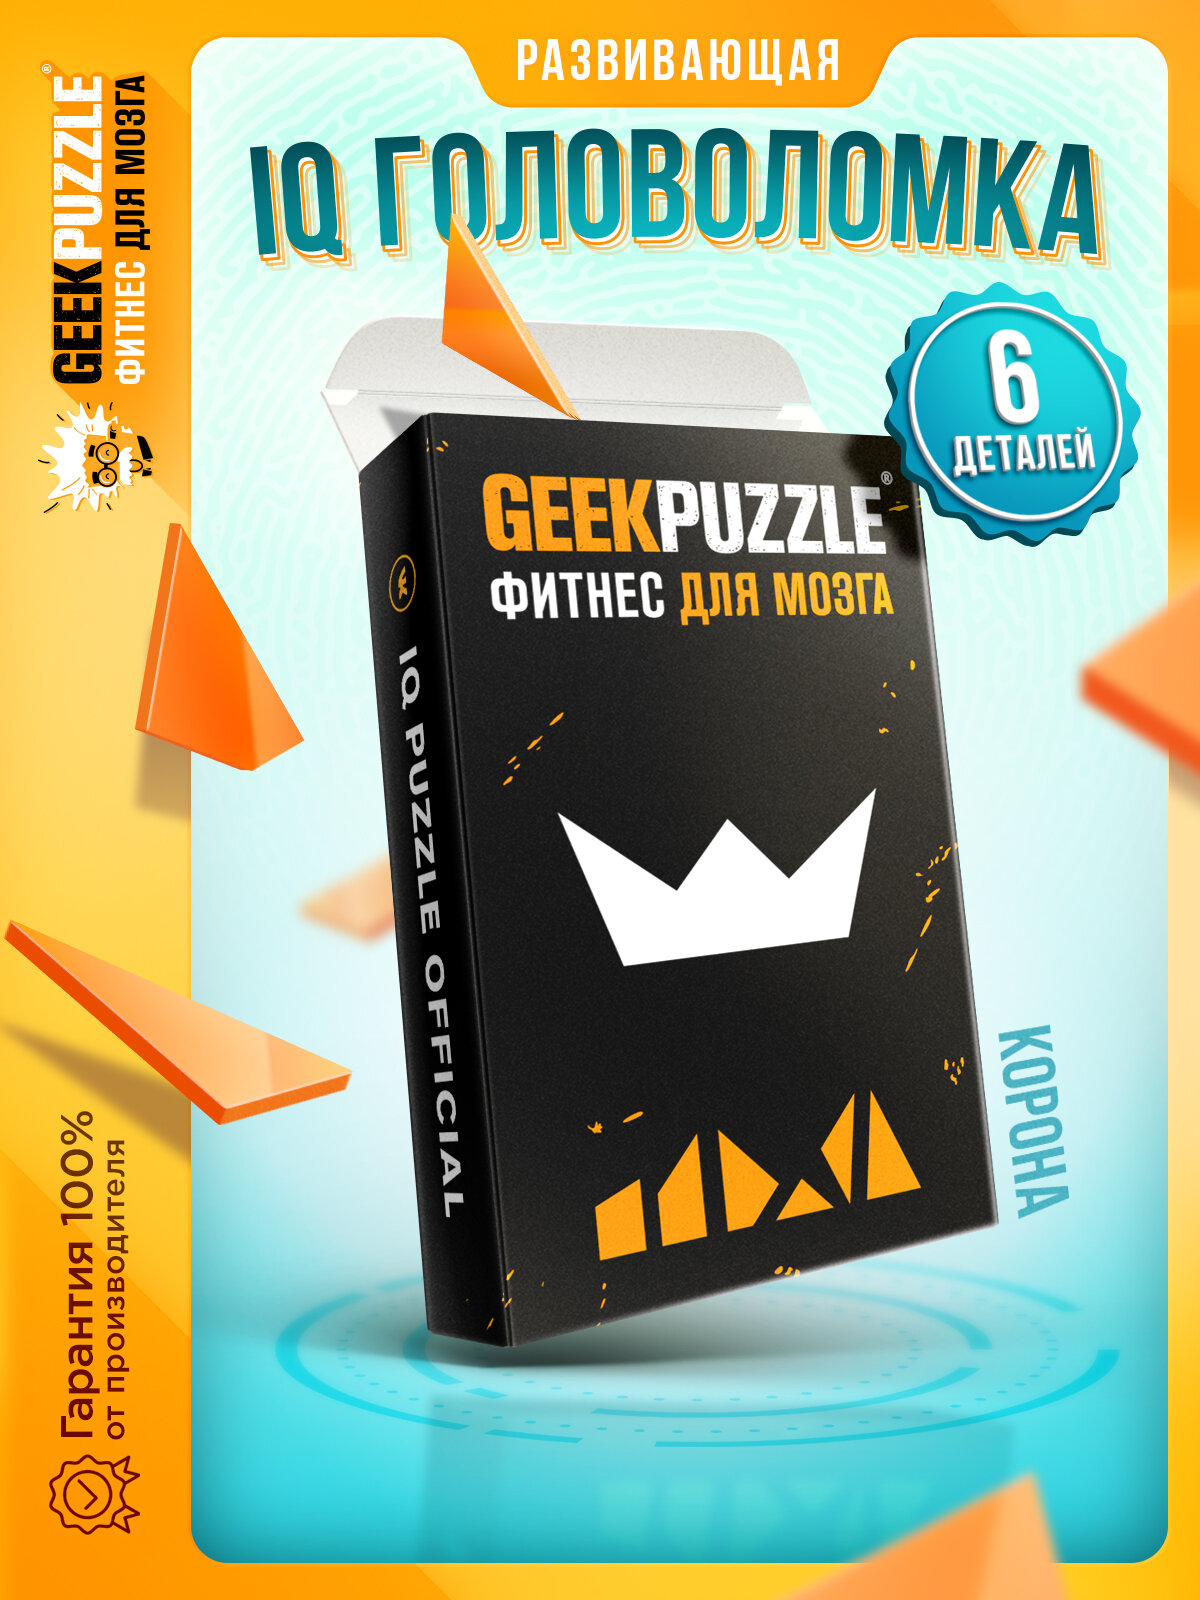 GEEK PUZZLE \ IQ Puzzle "Корона" - развивающая игра головоломка для всех возрастов